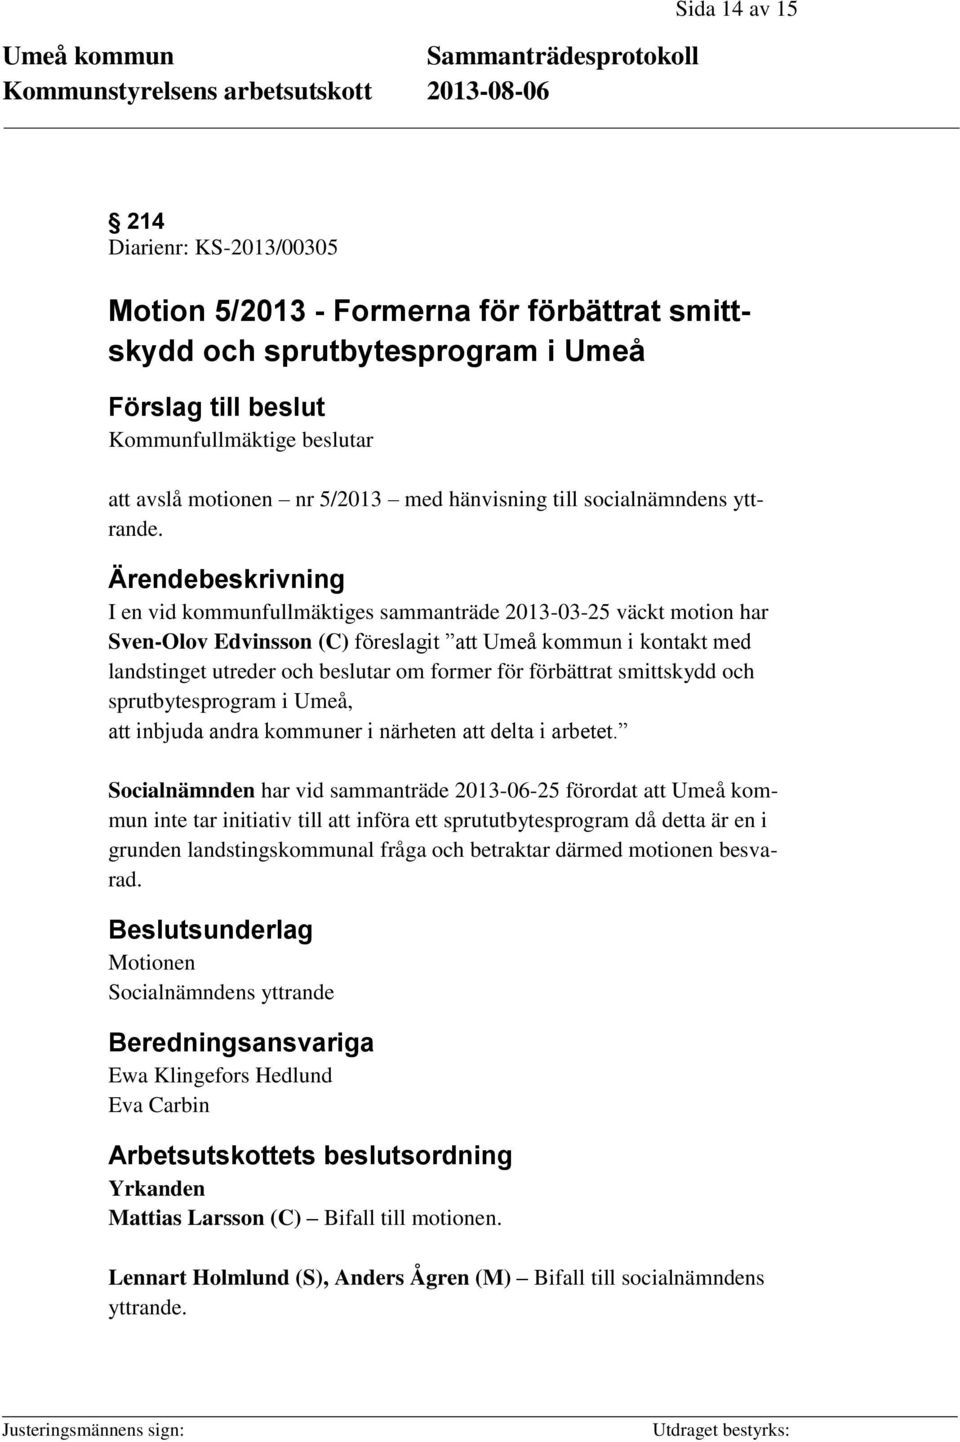 I en vid kommunfullmäktiges sammanträde 2013-03-25 väckt motion har Sven-Olov Edvinsson (C) föreslagit att Umeå kommun i kontakt med landstinget utreder och beslutar om former för förbättrat